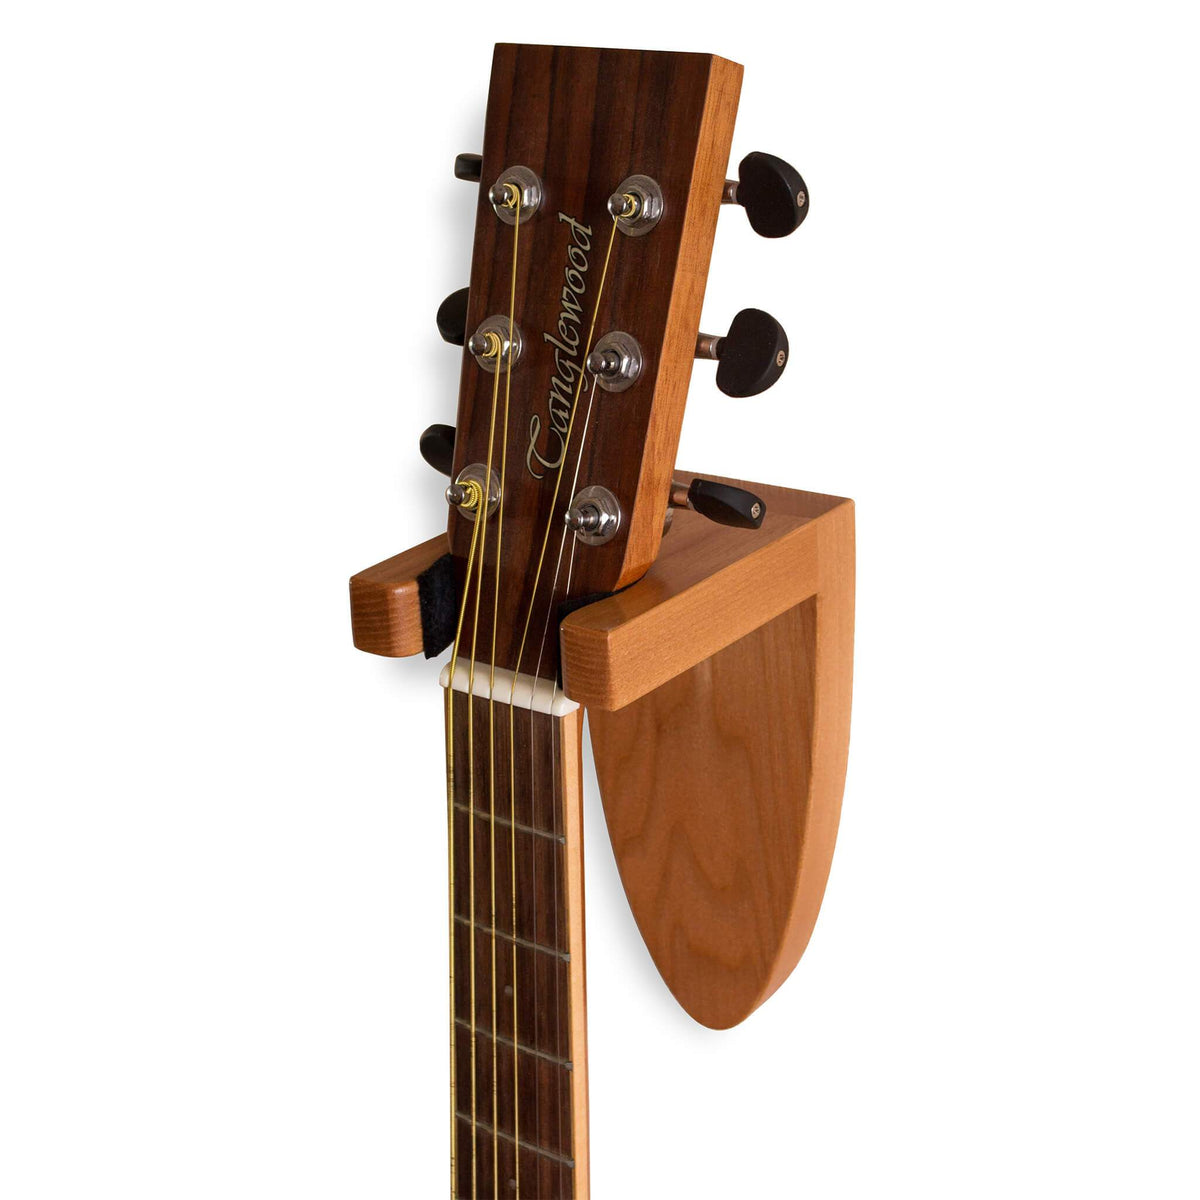 新作製品、世界最高品質人気! ギターハンガー 壁掛け ギタースタンド フックホルダー バイオリン アコギ